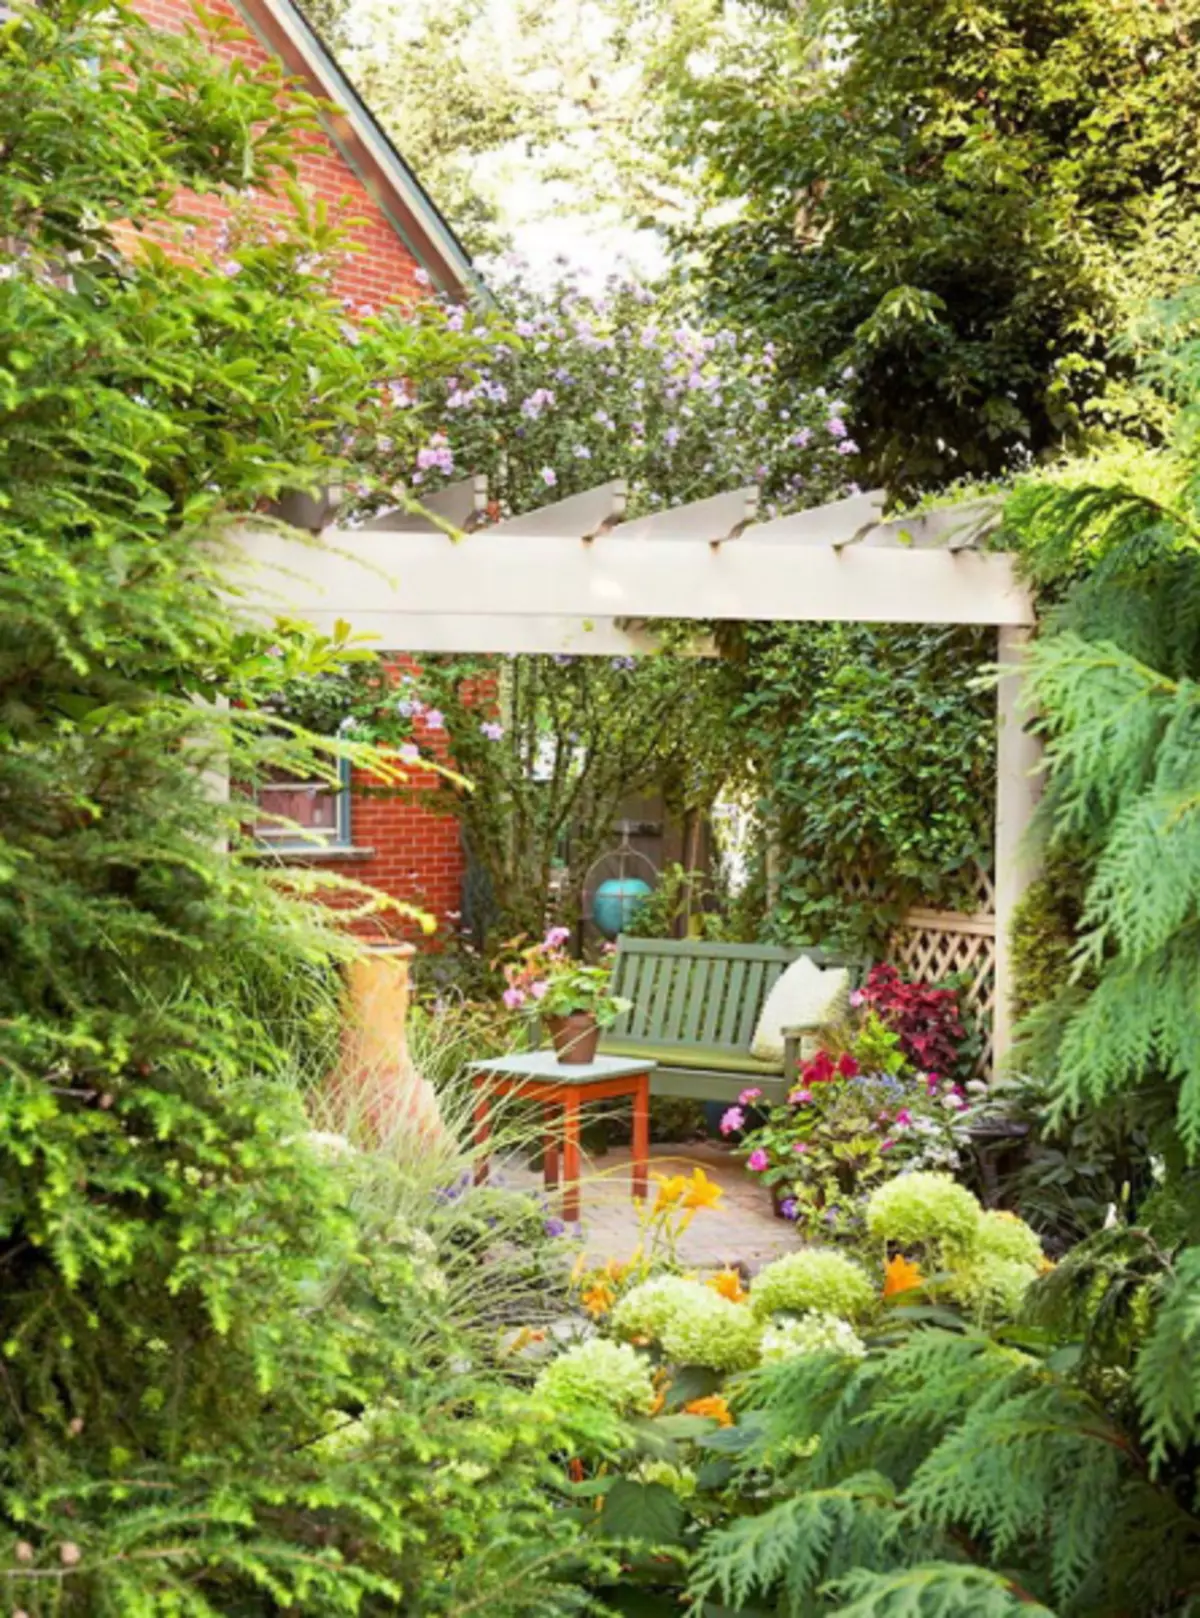 Gazons dans design de jardin: une petite maison pour loisirs au chalet (35 photos)